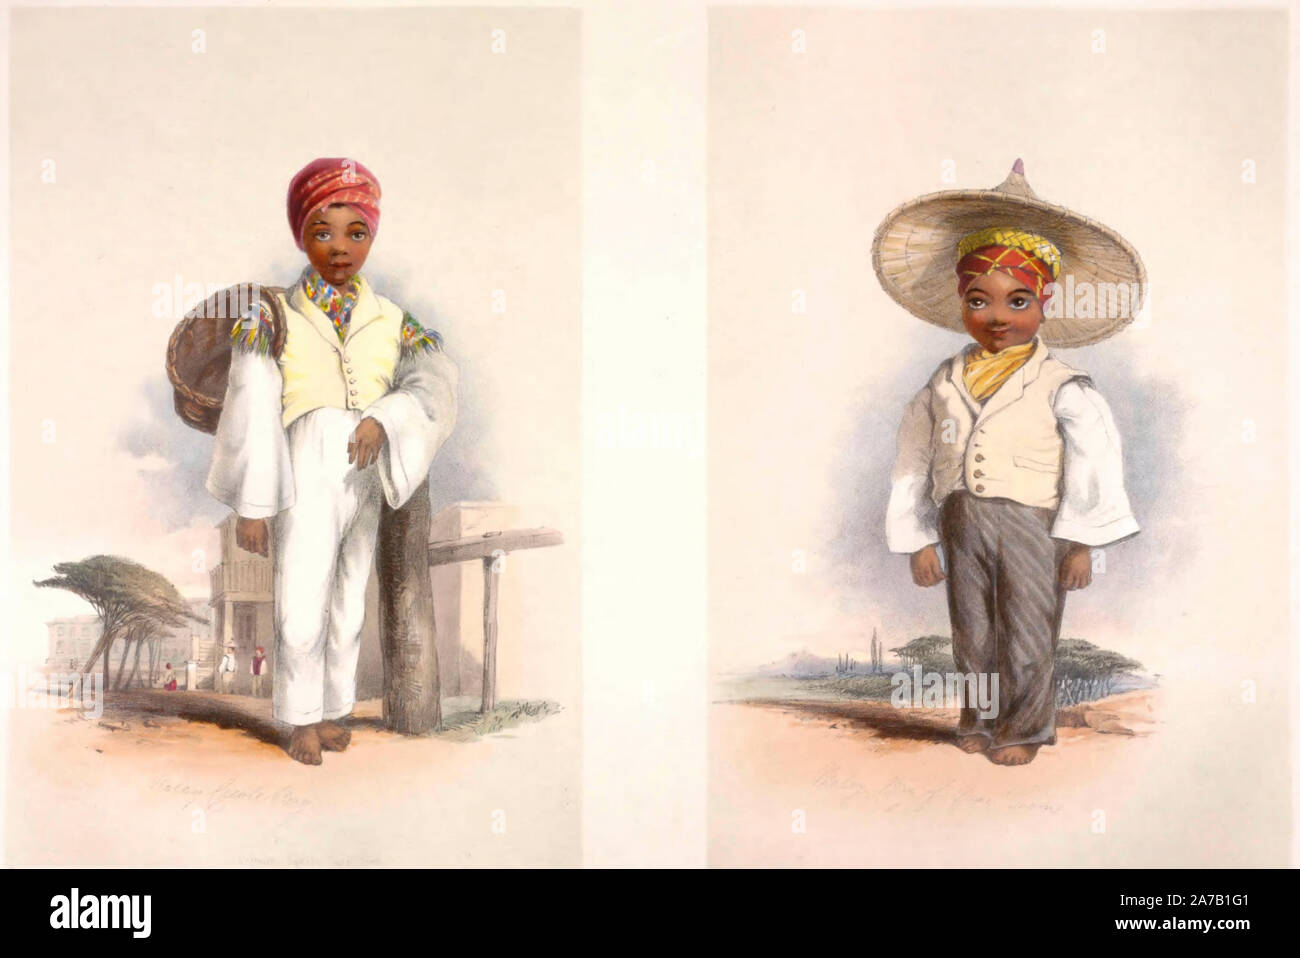 Les garçons Malais du Cap de Bonne Espérance, vers 1849 Banque D'Images